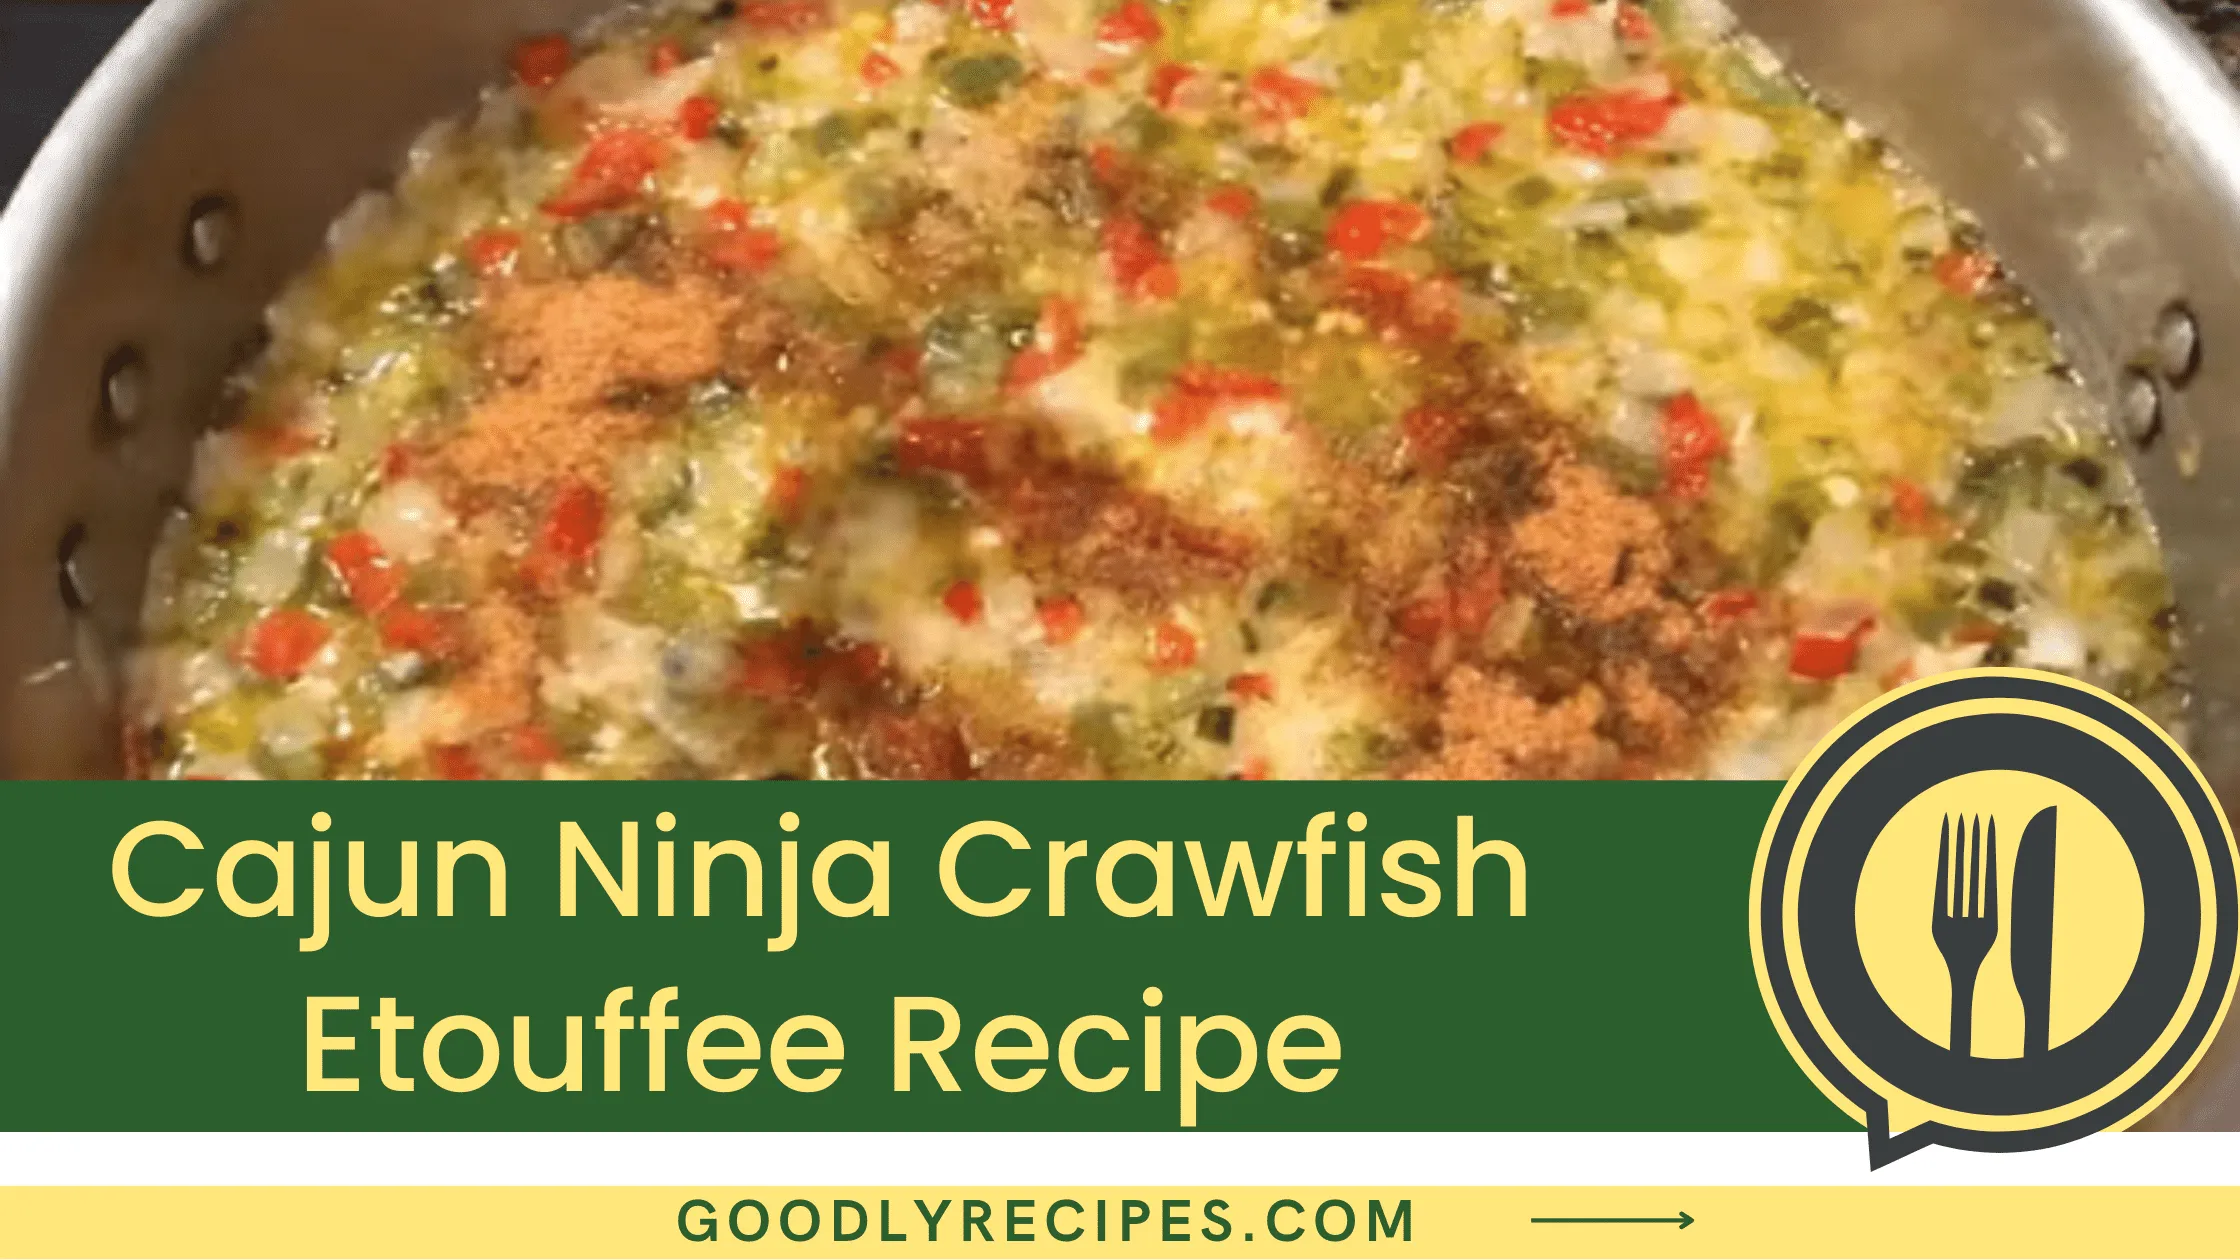 Cajun Ninja Crawfish Etouffee Recipe - For Food Lovers